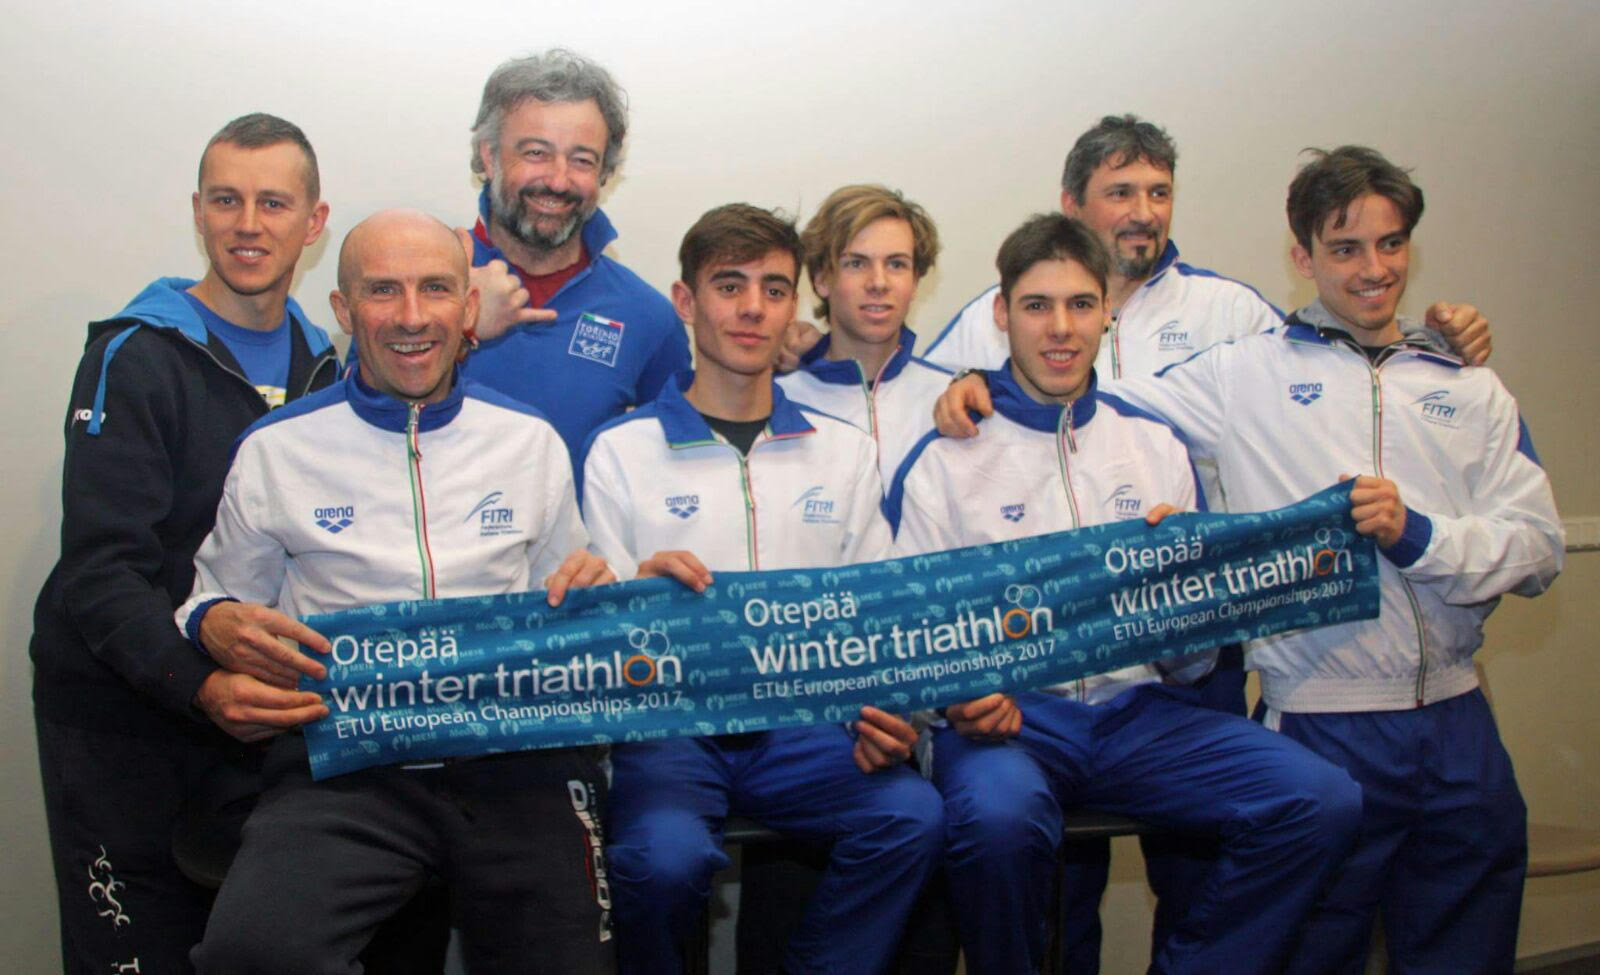 Europei Winter Triathlon: Argento Junior per Davide Ingrilli, i piazzamenti degli italiani